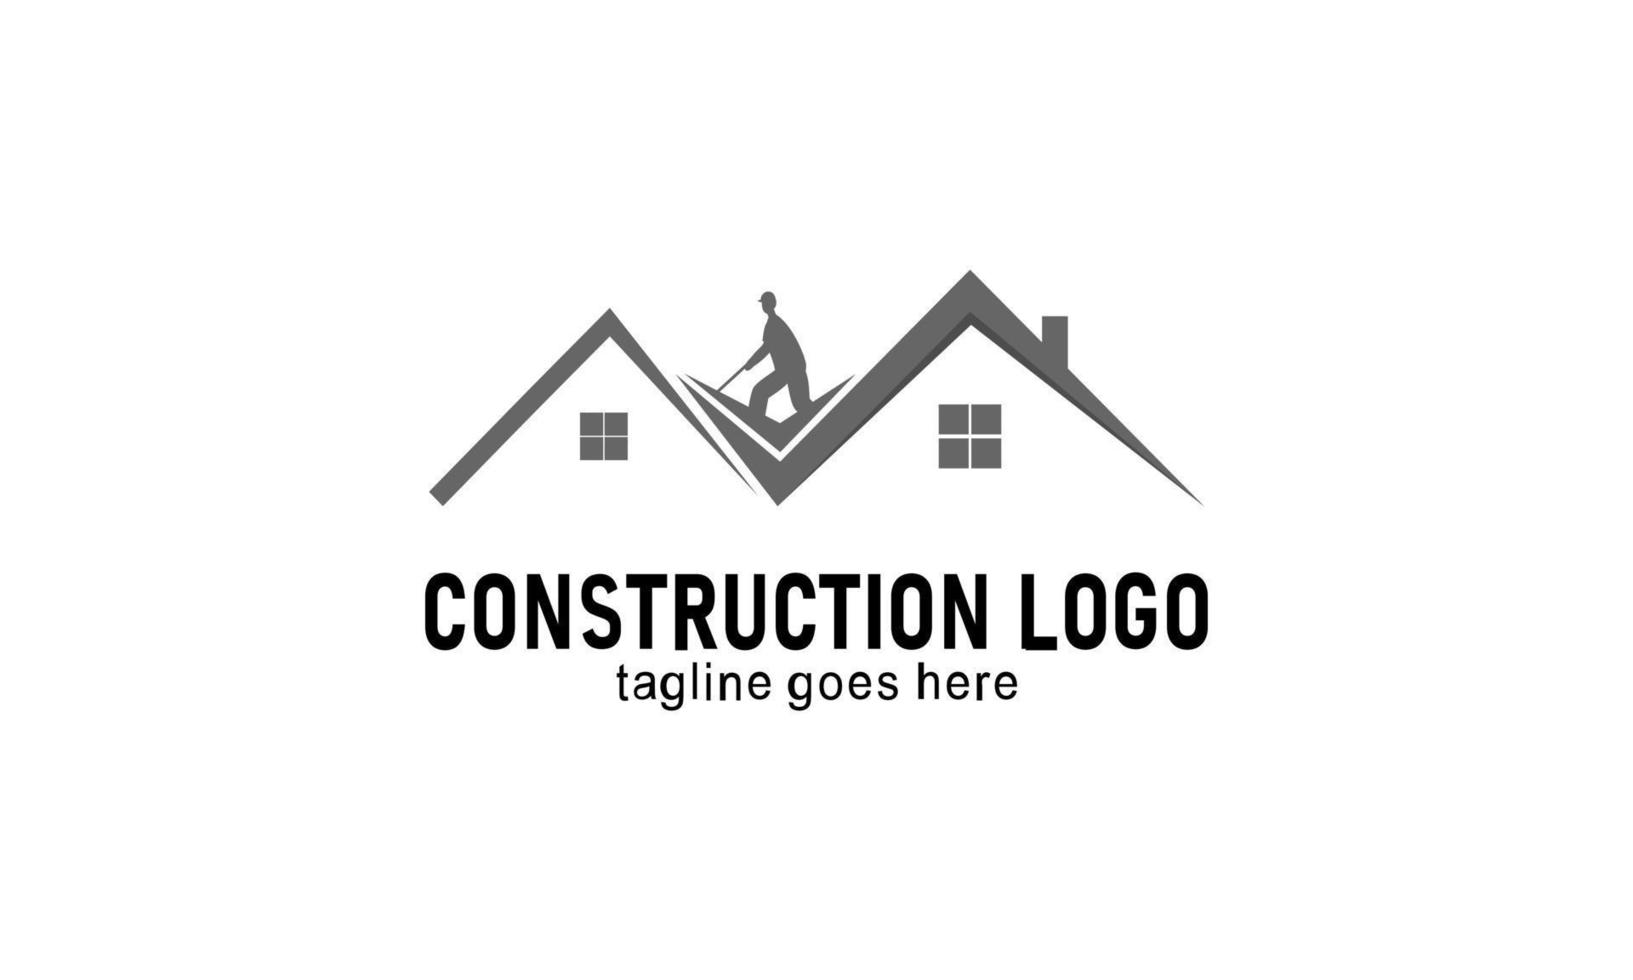 Accueil construction entreprise logo vecteur